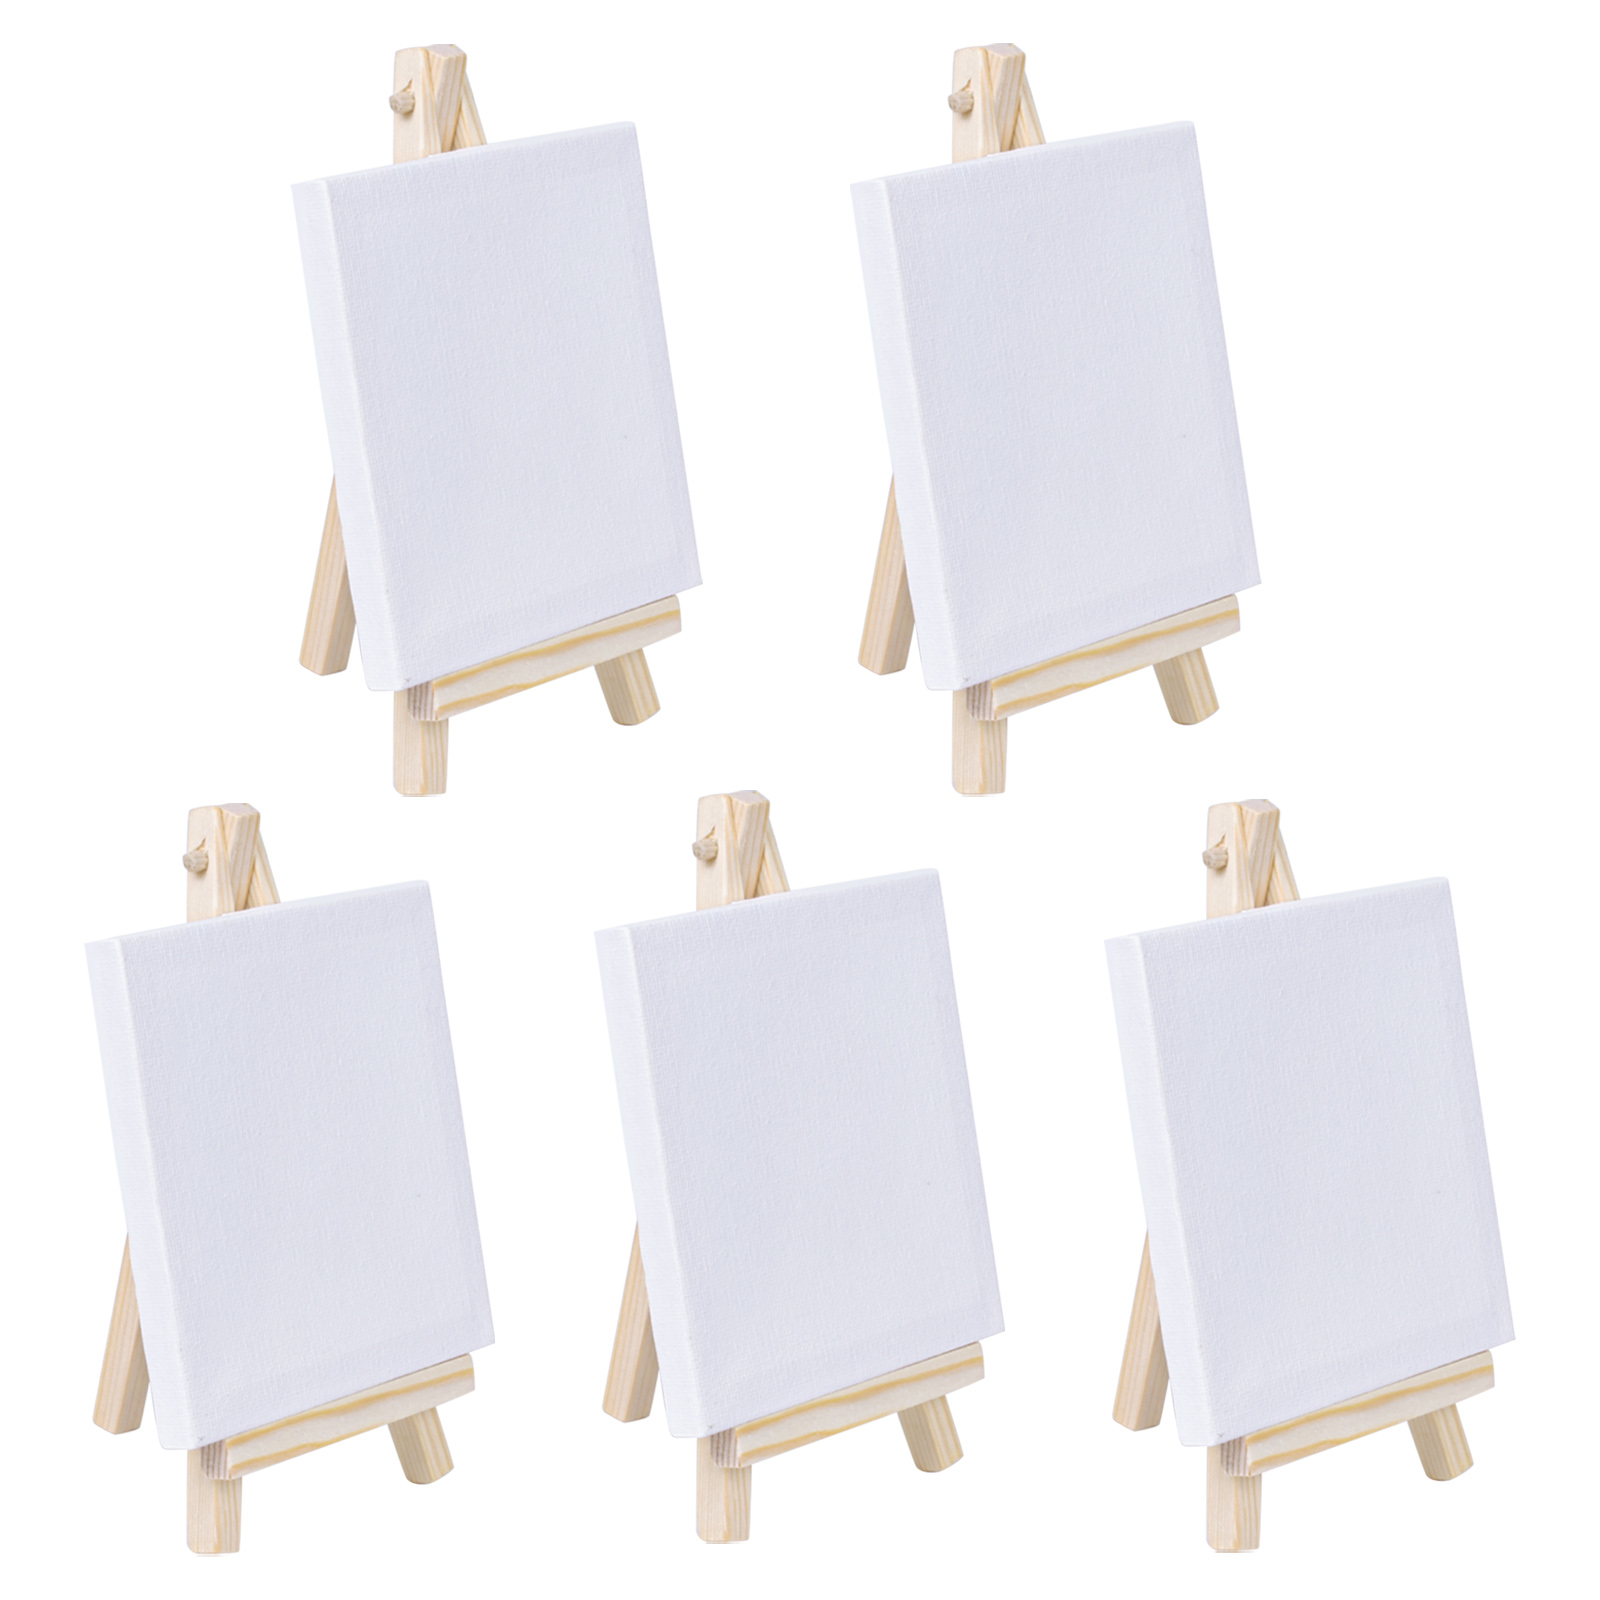 Blank Painting Board or Canvas Board, Wooden Easel, Art Board